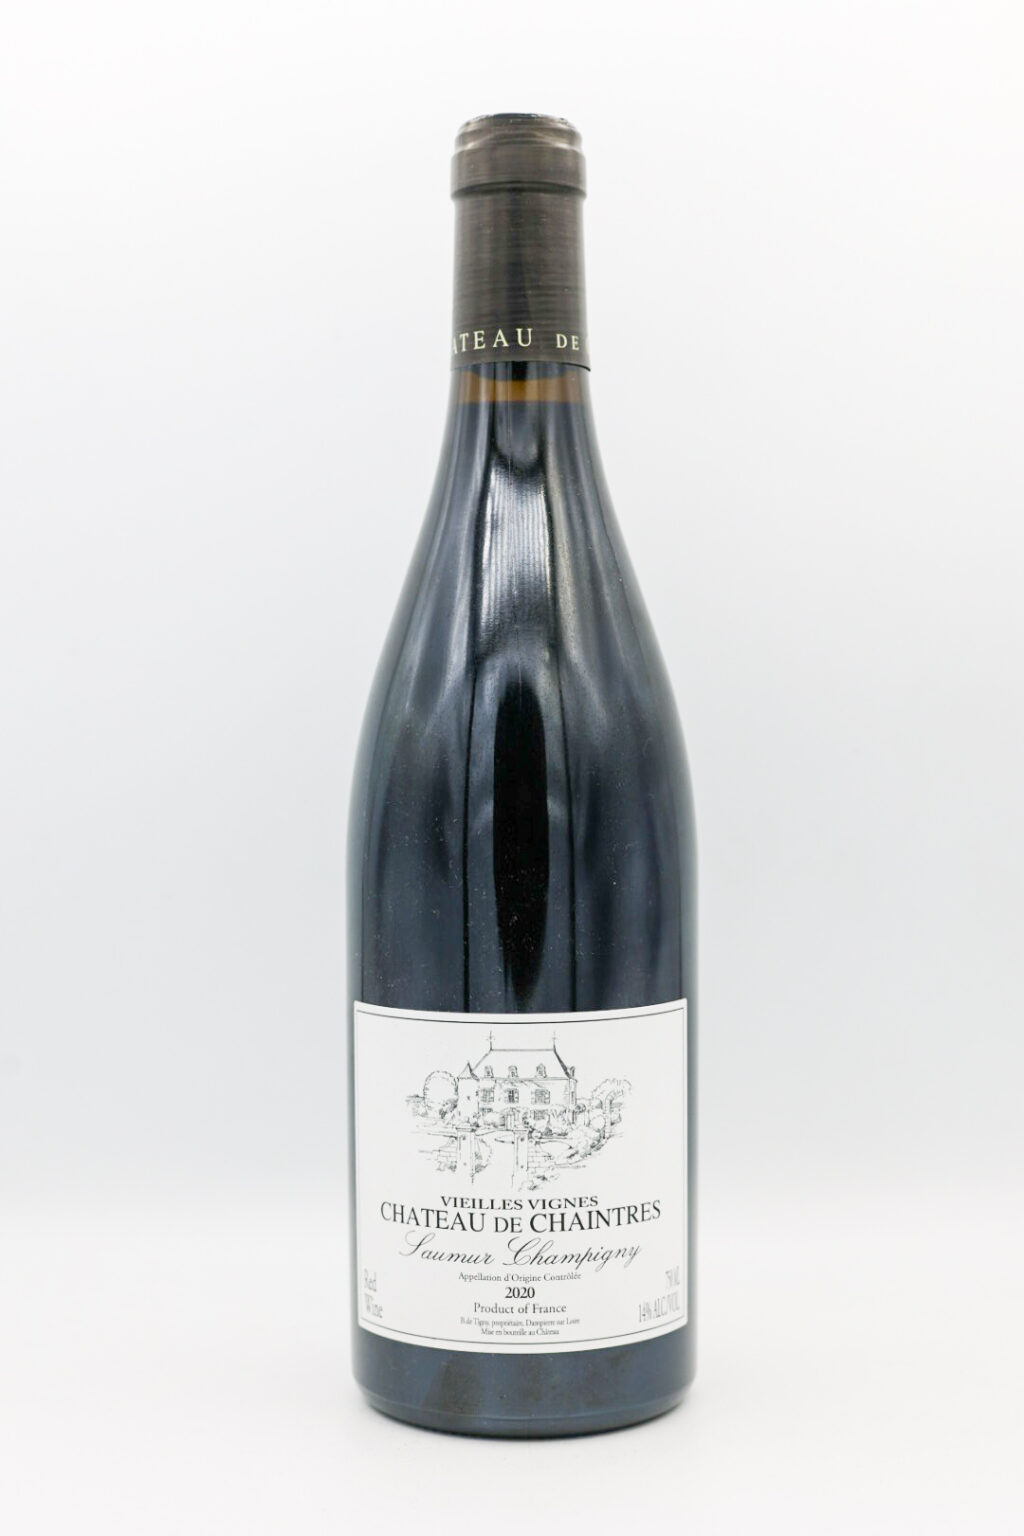 Chateau de Chaintres Saumur Champigny Vieilles Vignes 2020